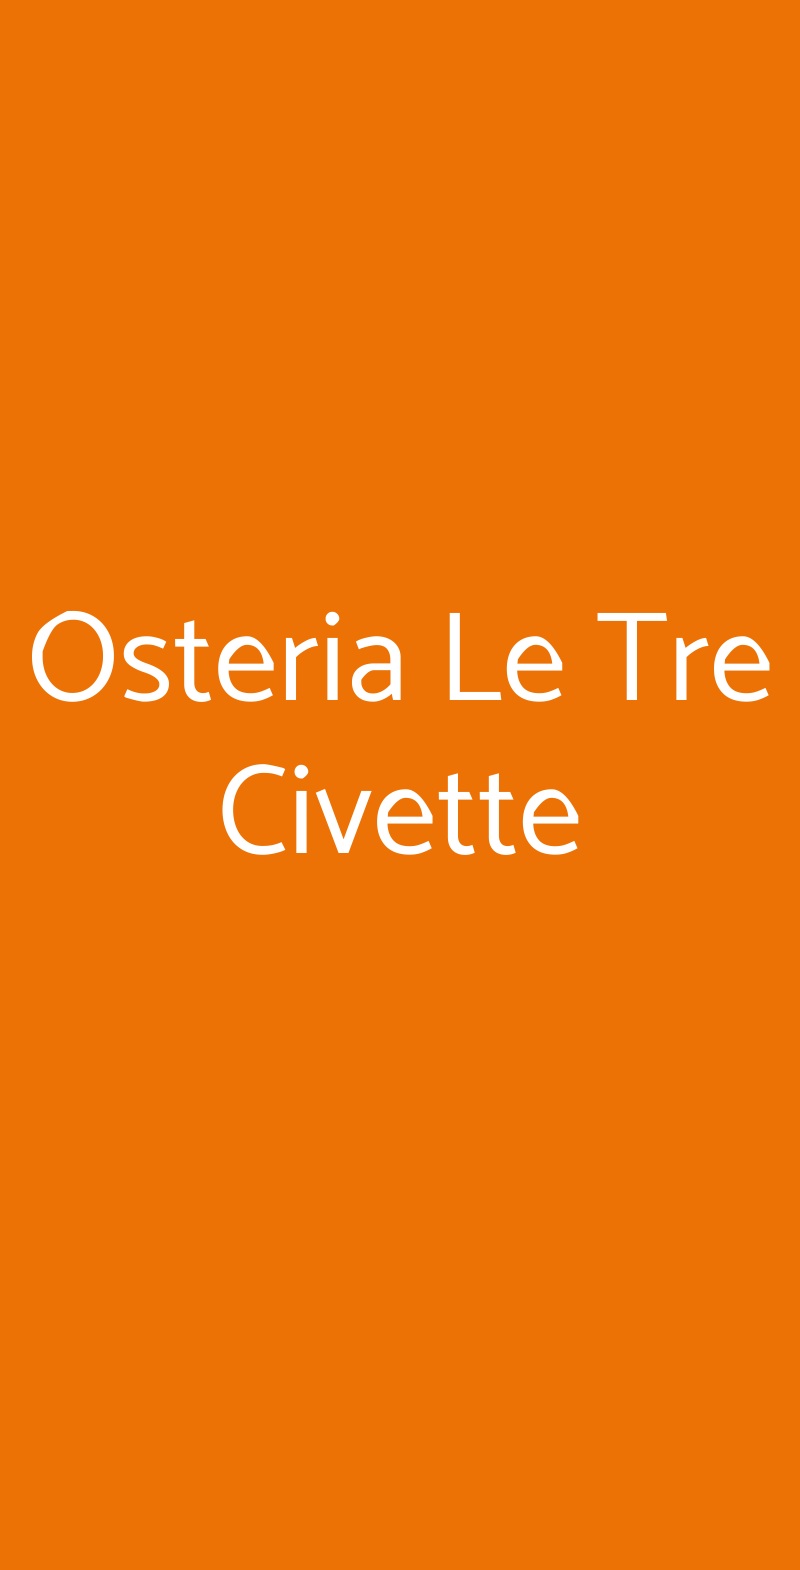 Osteria Le Tre Civette Livorno menù 1 pagina